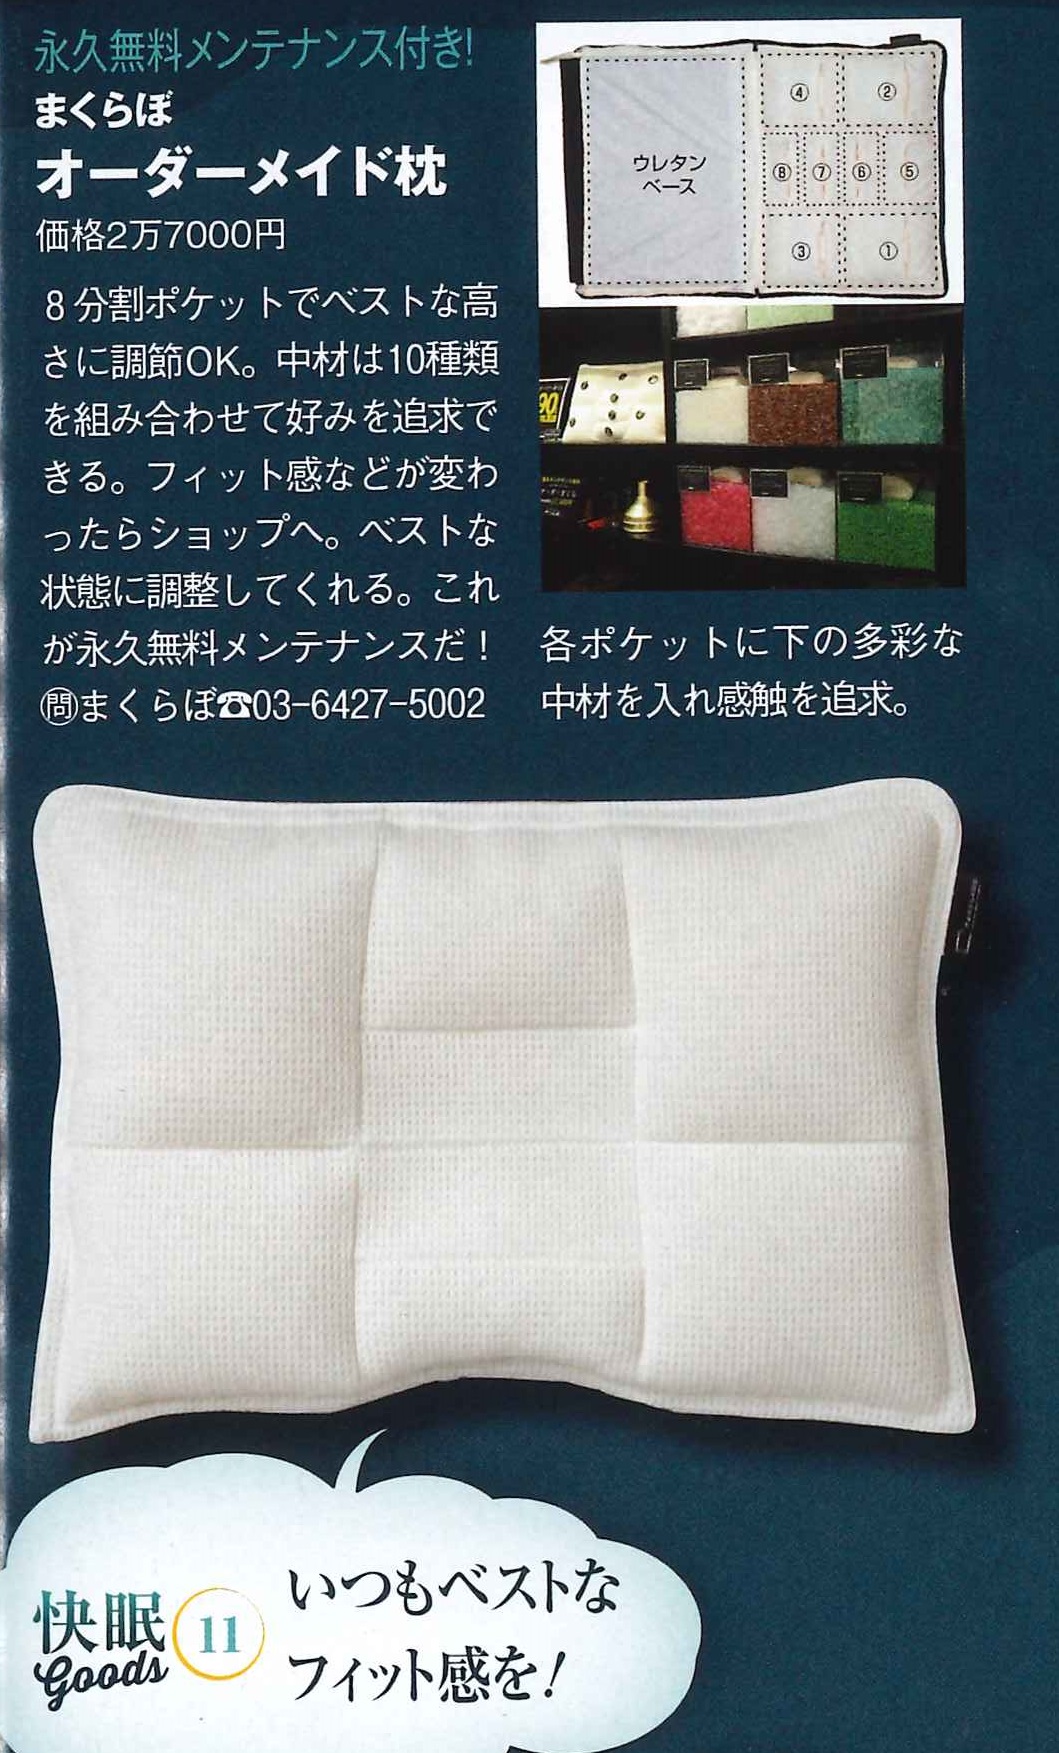 9月2日発売の『モノ・マガジン』にてまくらぼのオーダーメイド枕が紹介